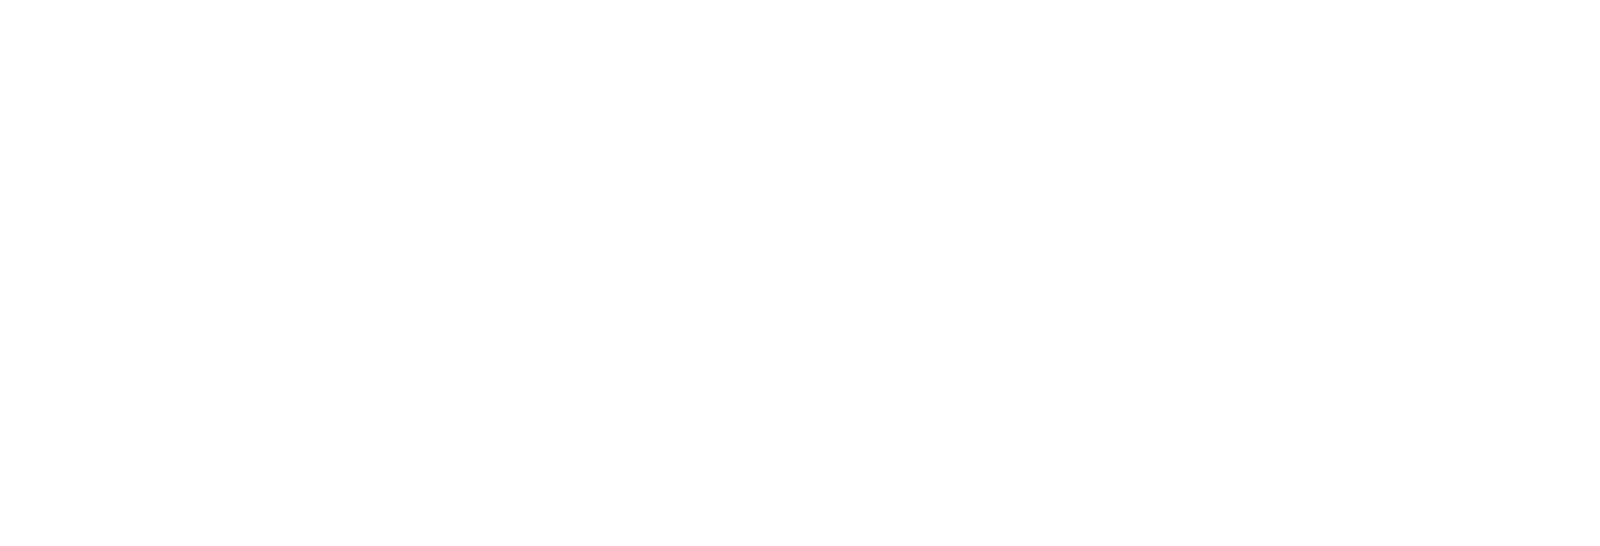 Trendy and Wild